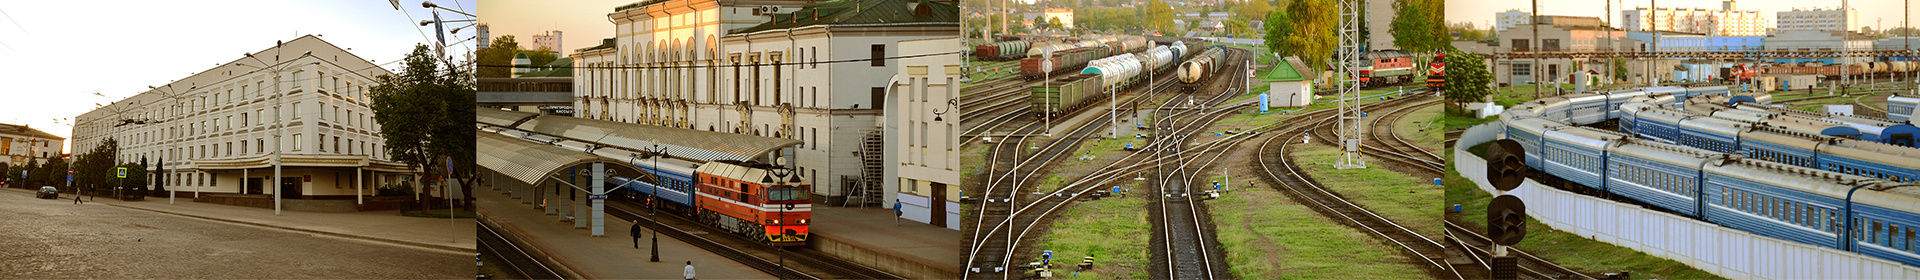 Витебское отделение Белорусской железной дороги УП